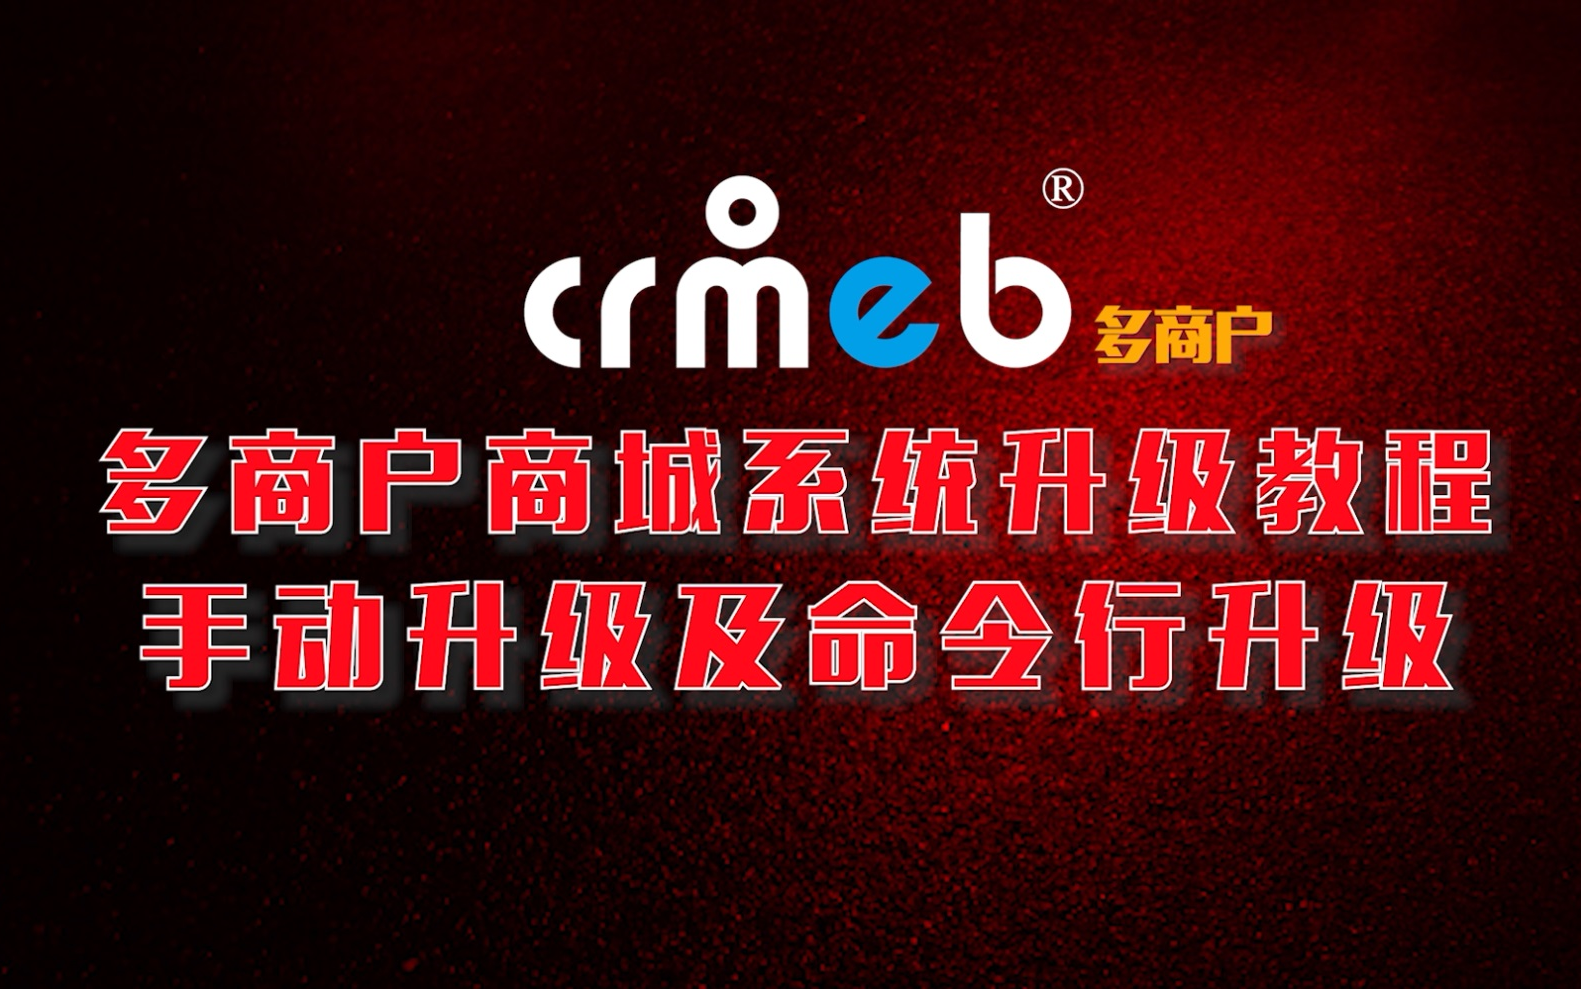 CRMEB多商户手动升级及命令行升级教程